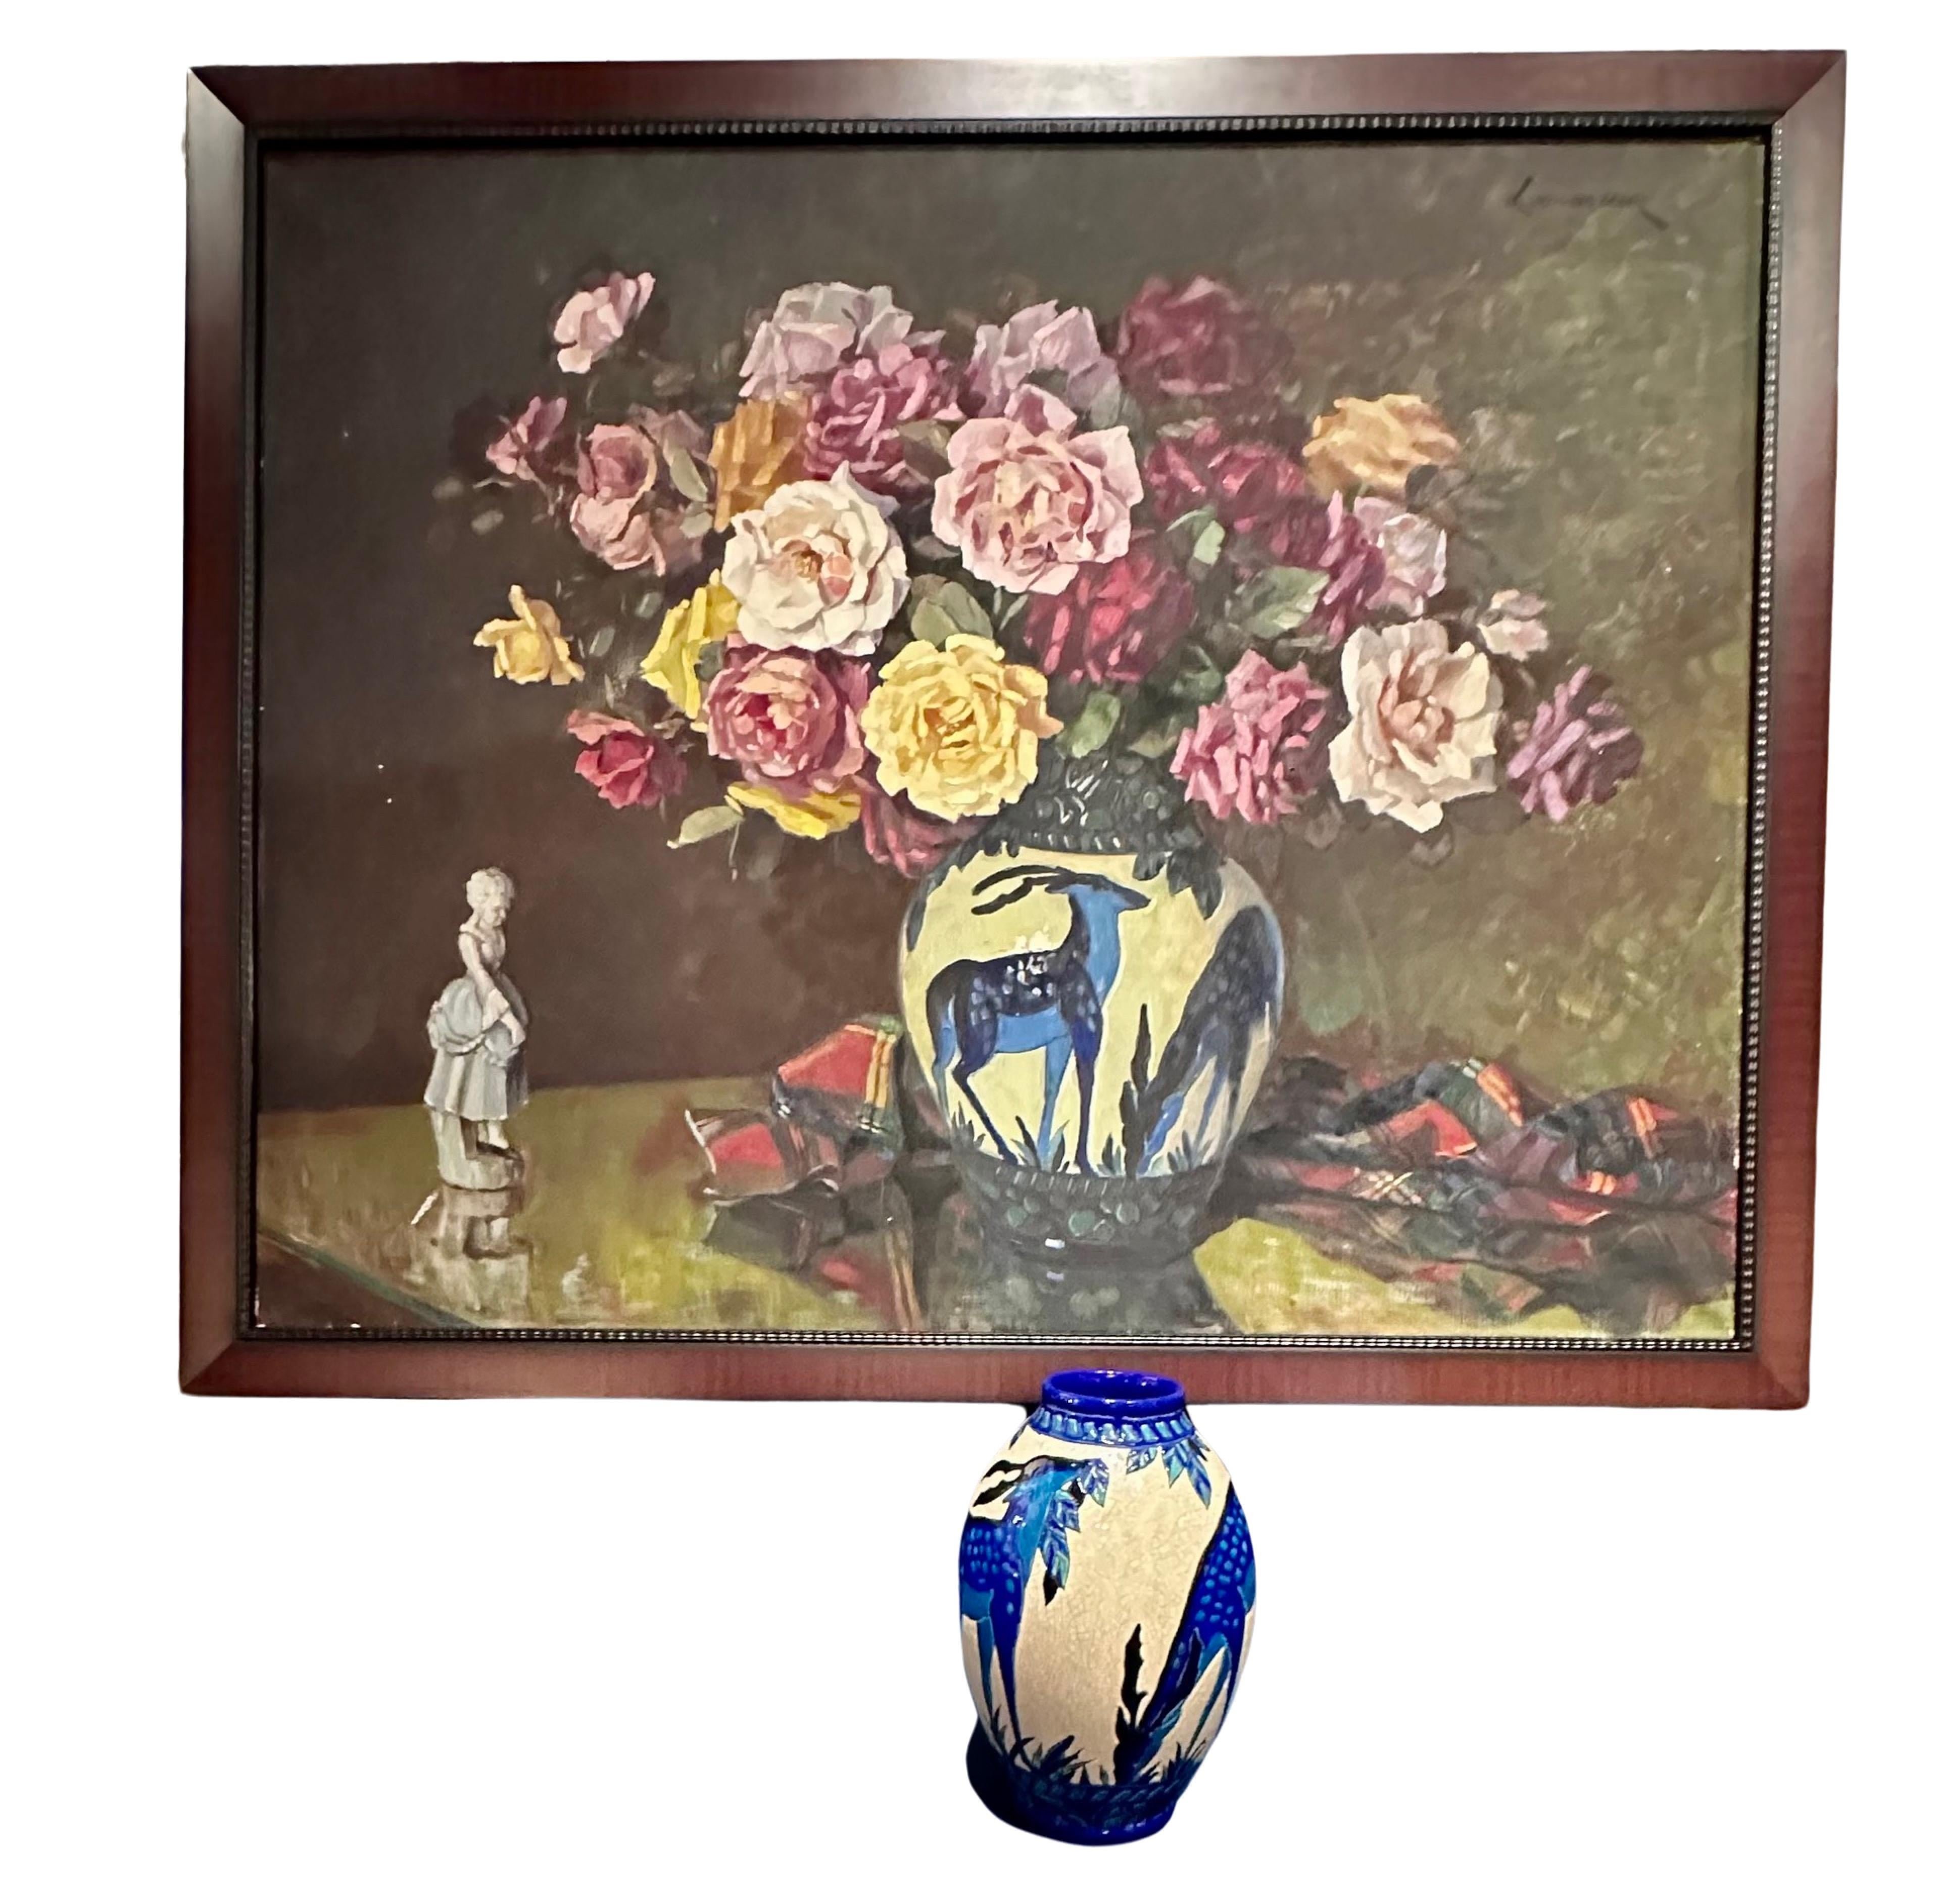 Catteau Boch Gazelle Vase mit einzigartiger passender Malerei Belgien Art Deco. Eine einzigartige Gelegenheit, eine seltene Boch-Gazellenvase mit einem Originalgemälde zu erwerben, das die Vase darstellt. Gekauft in Belgien ist es ein großartiges